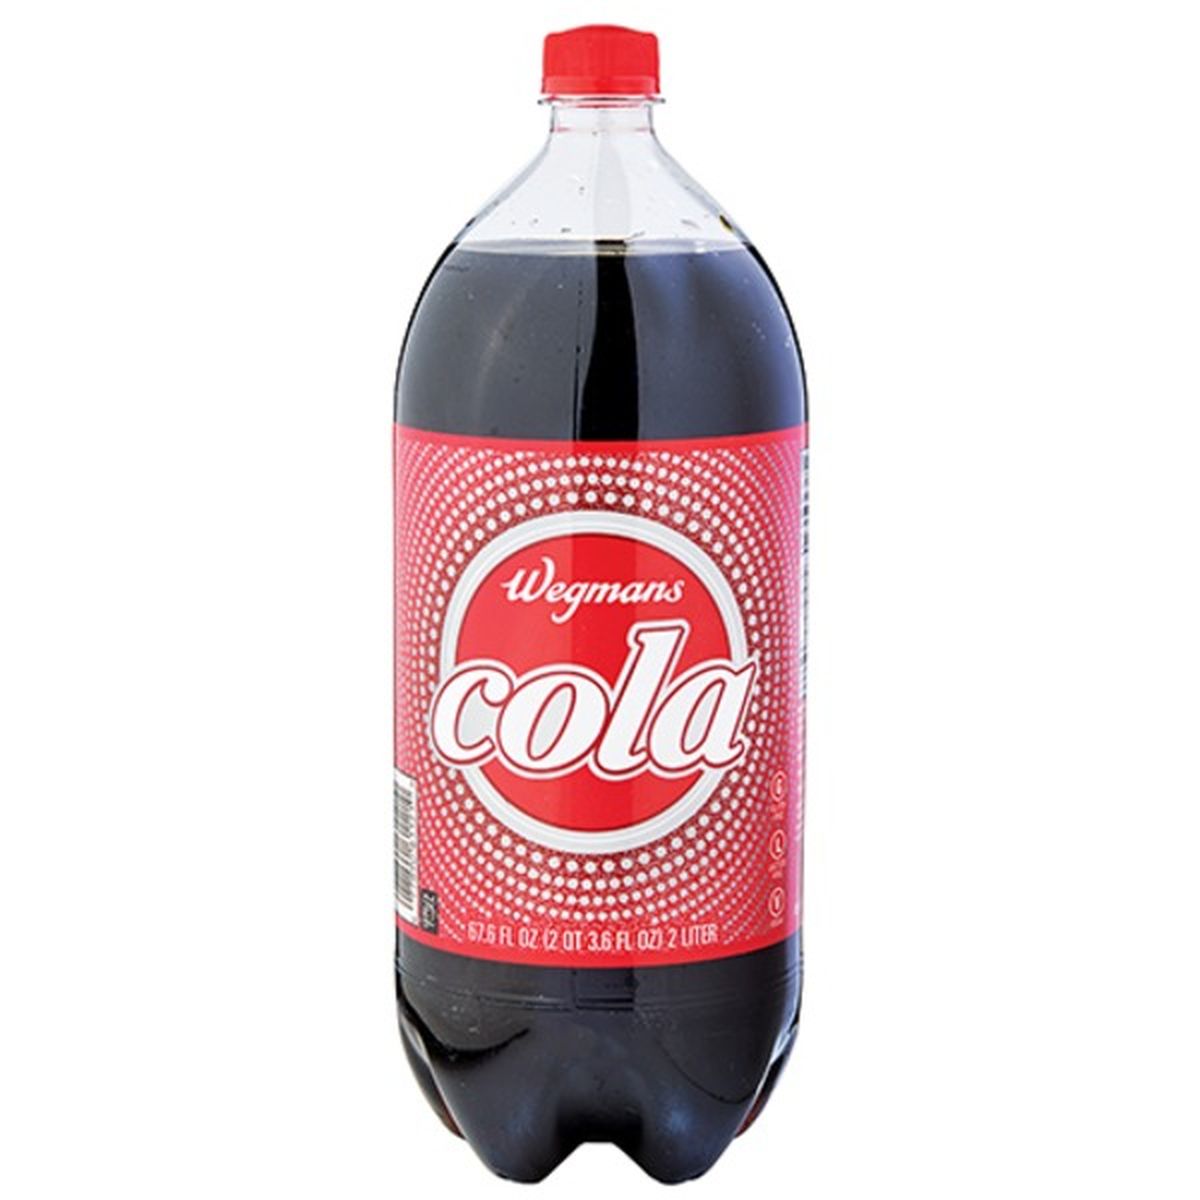 Calories in Wegmans Cola